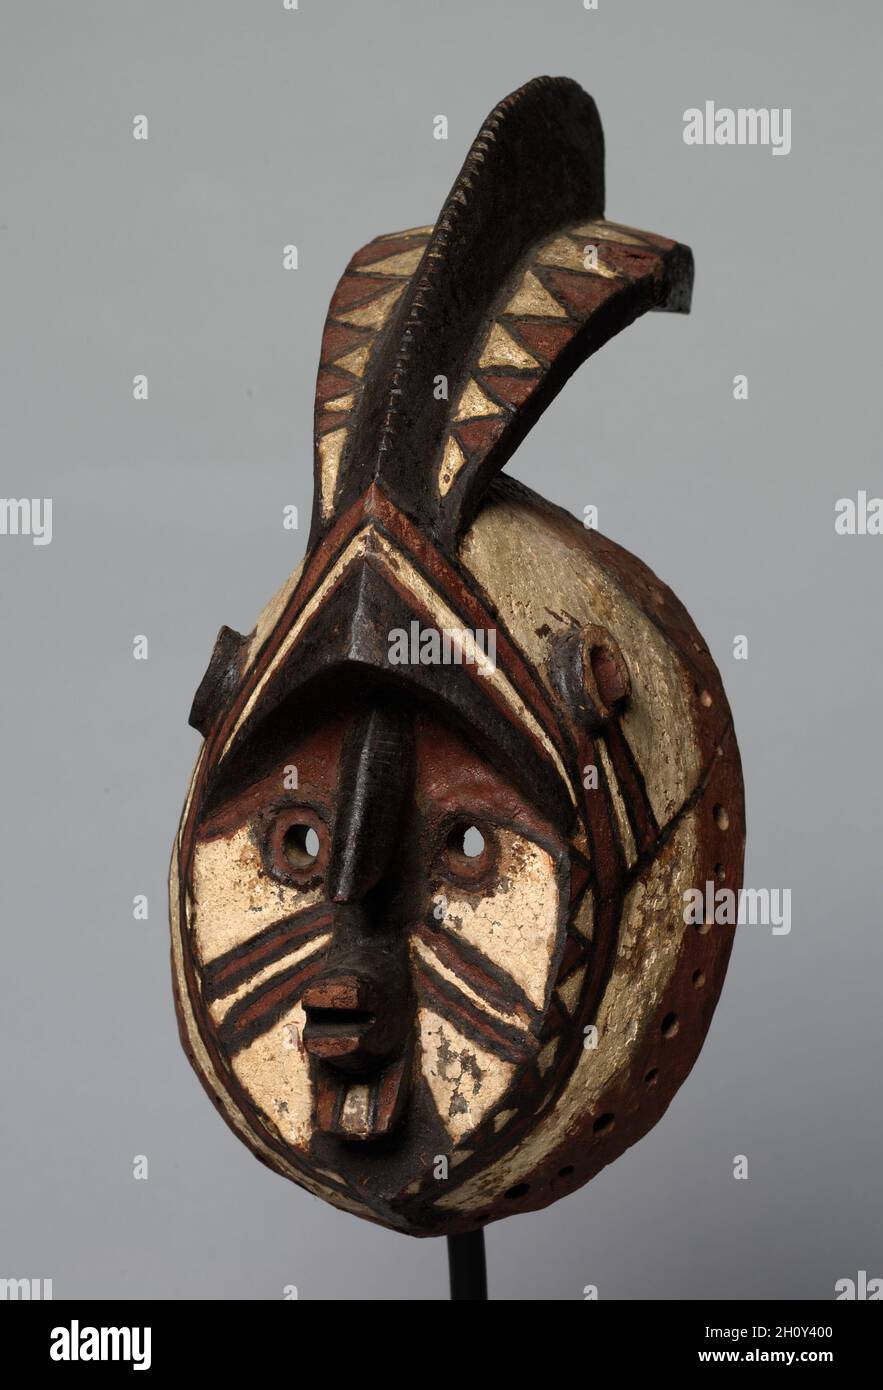 Maschera (wan-balinga), primi del 1900. Africa, Africa occidentale, Burkina Faso, fabbro-carver in stile mossi. Legno e vernice; totale: 34 x 14 x 14 cm (13 3/8 x 5 1/2 x 5 1/2 pollici). Solo i contadini tra i mossi impiegano maschere. il nome proprio di questa maschera, wan-balinga, evoca una figura mitica che era la madre del primo sovrano dei mossi. Tali maschere sono più tipicamente indossate e ballate con in occasione del funerale di un anziano maschio o femmina come scorta del cadavere alla tomba. Essi compaiono anche durante i servizi commemorativi annuali che si verificano mesi dopo l'effettiva sepoltura, quando tutti i clan deceduti m Foto Stock